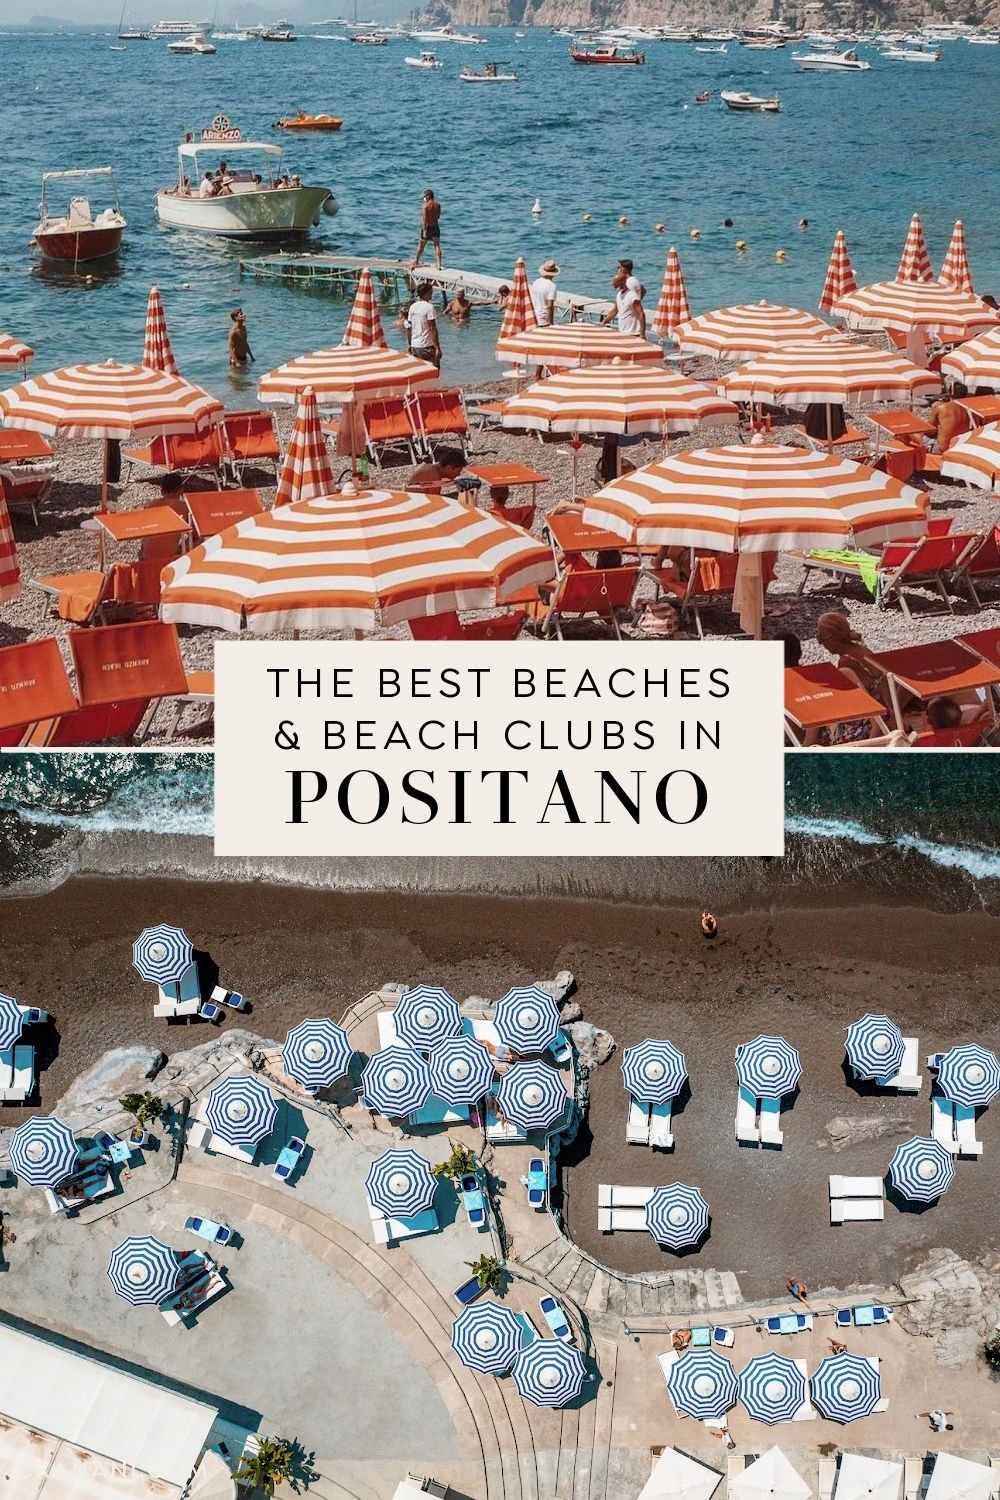 The best beaches in Positano (and beach clubs). things to do in Positano Italy, Positano things to do, Positano holiday, Positano itinerary, Amalfi Coast Italy, Italy destinations, Italy itinerary